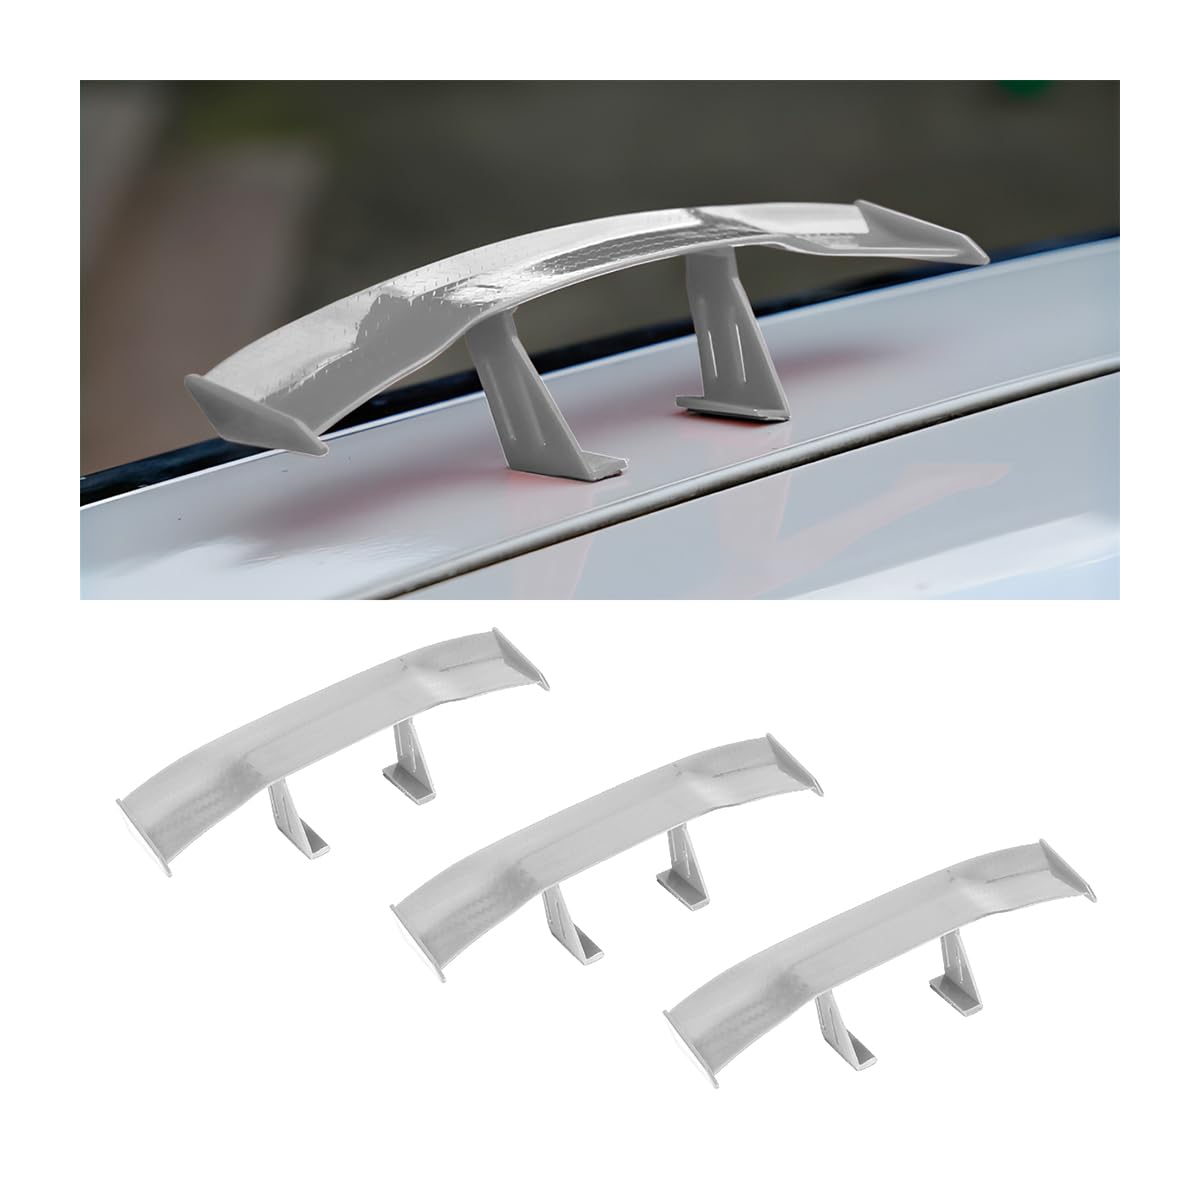 CGEAMDY Auto Mini Schwanz Spoiler Flügel, 3 PCS Universal Auto Mini Spoiler Wing, Auto Heckflügel-Dekoration OhnePerforation Kann für Alle Fahrzeugumbauten(Grau) von CGEAMDY